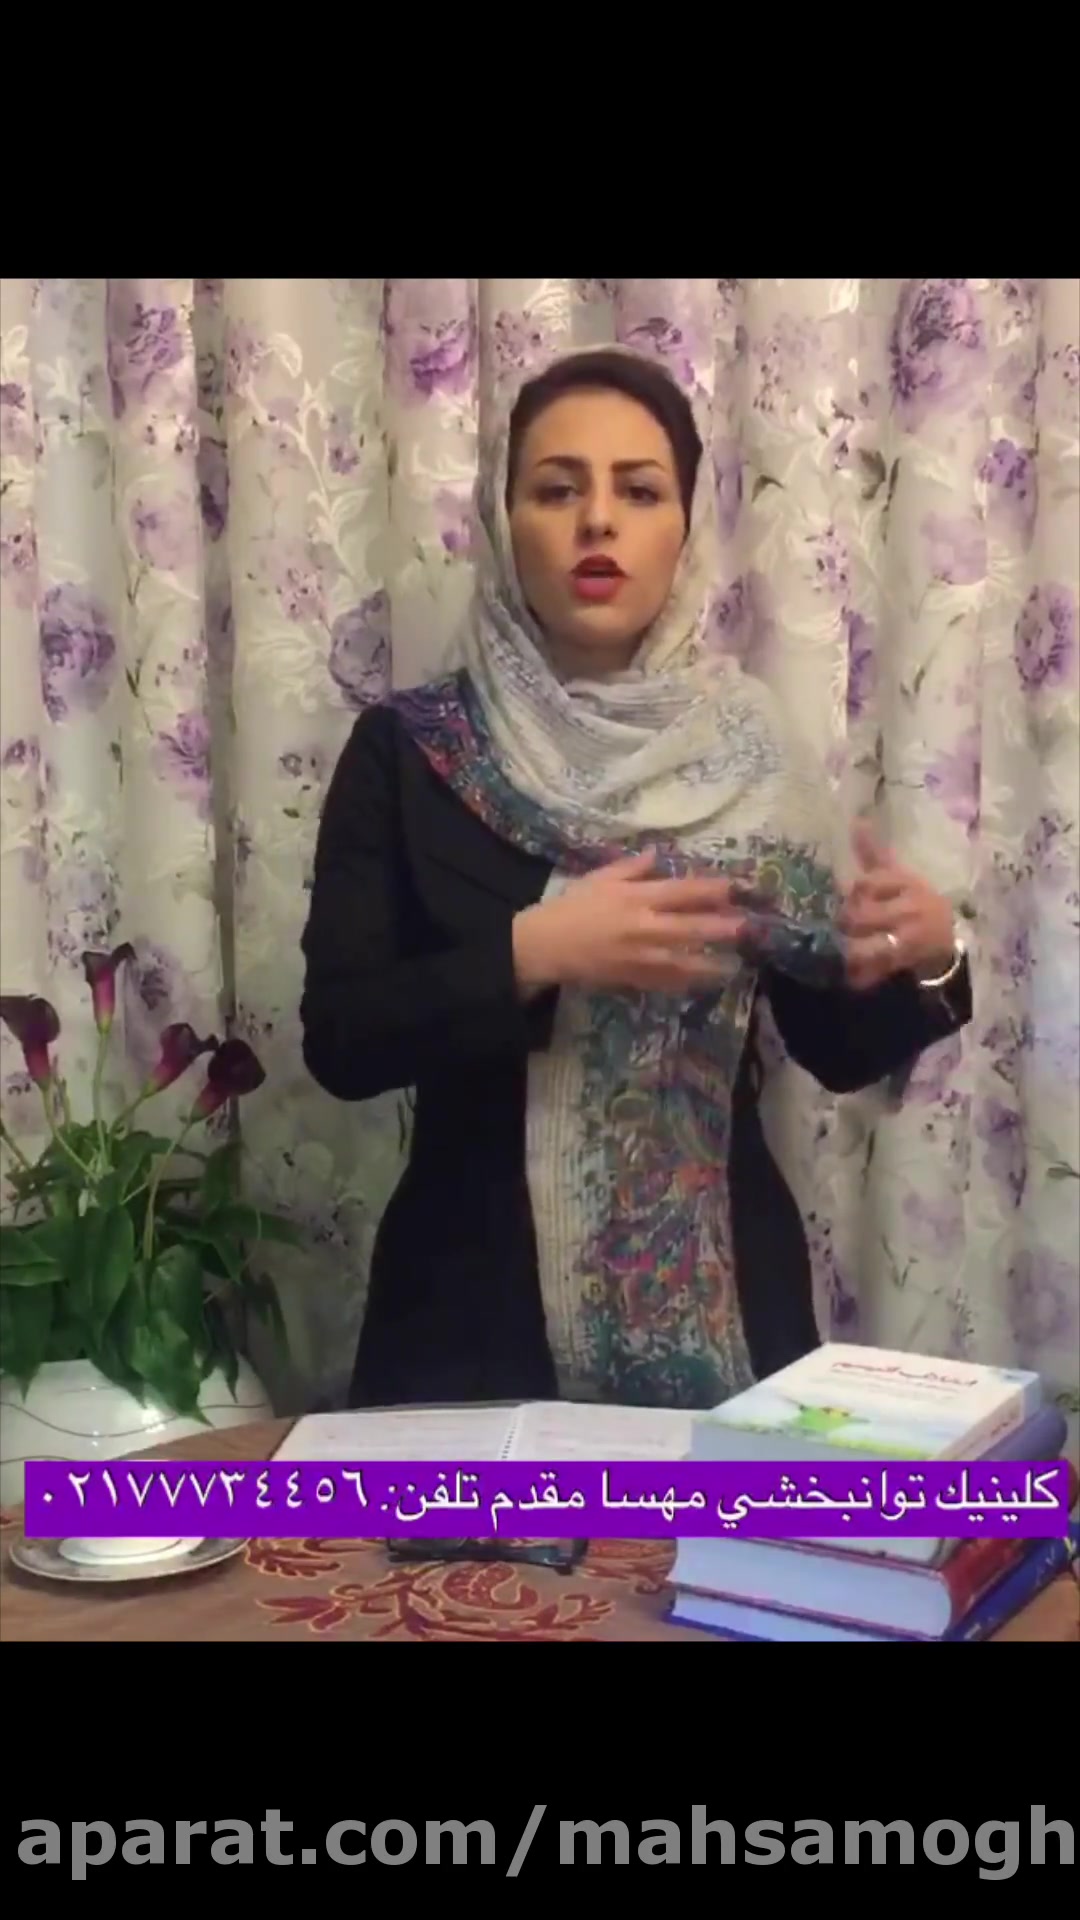 بهترین کلینیک گفتار درمانی کار درمانی درمان اتیسم شرق تهران مهسا مقدم 18